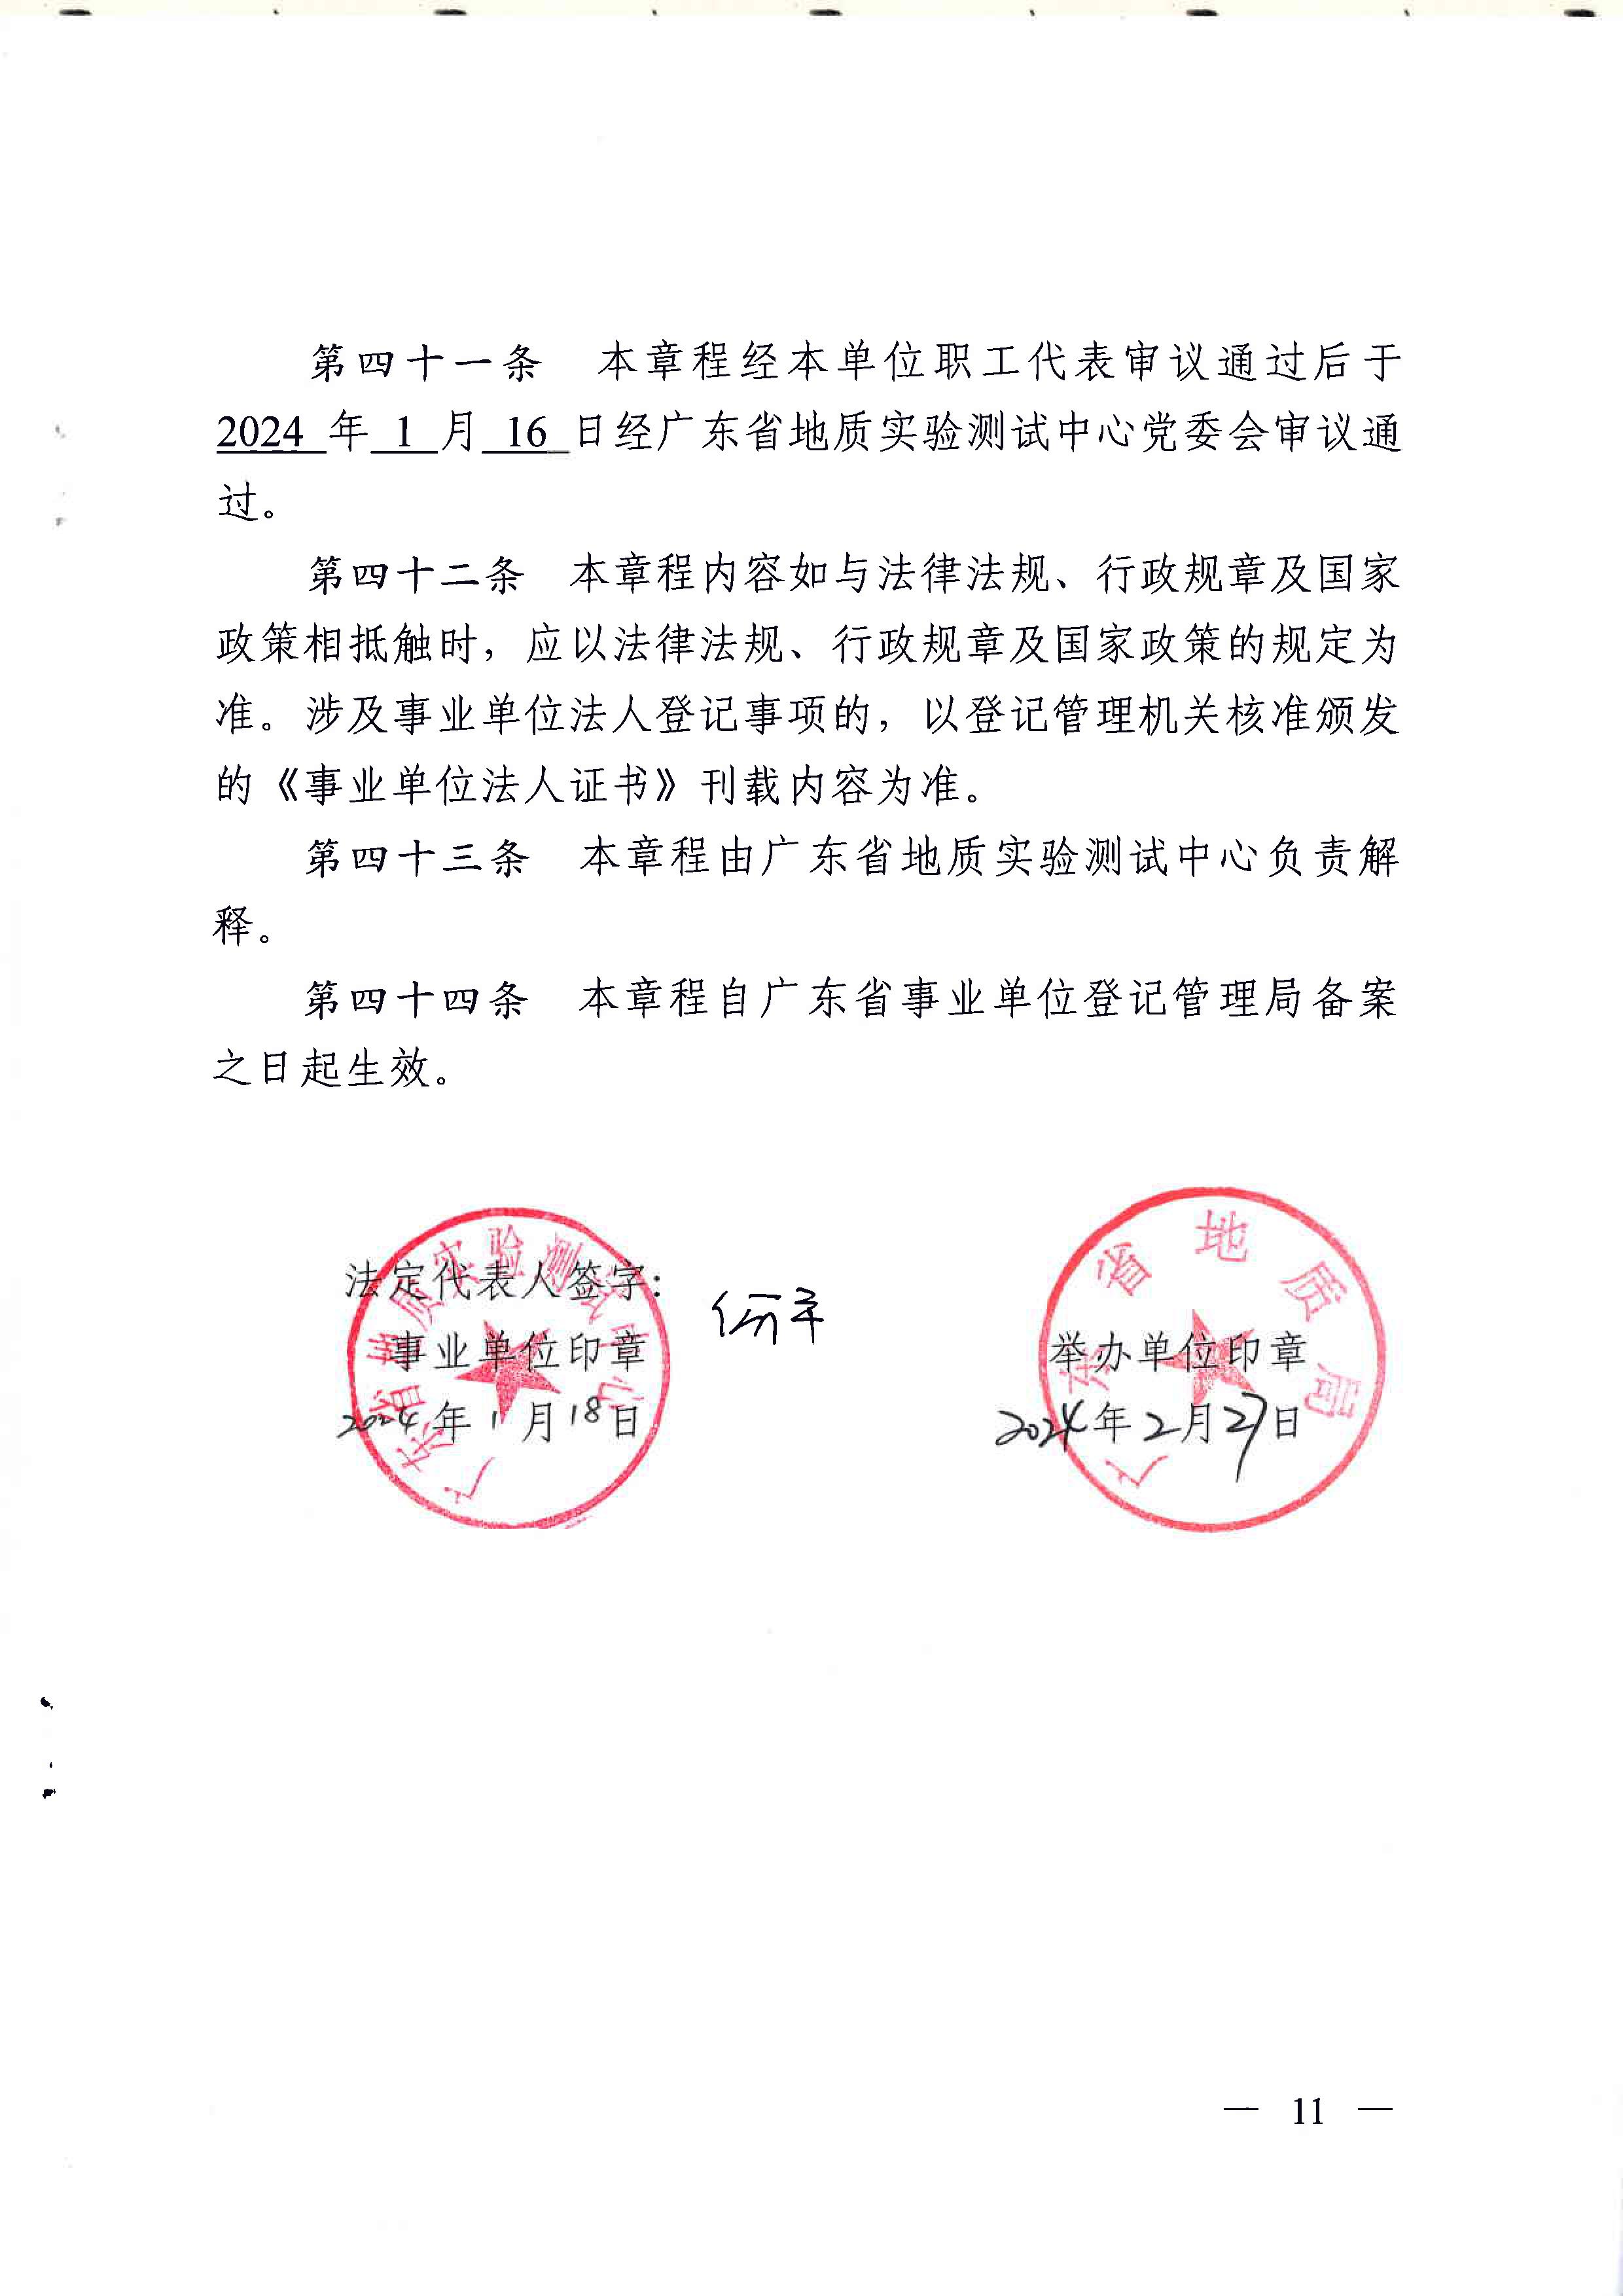 广东省地质实验测试中心事业单位章程 - 0011.jpg